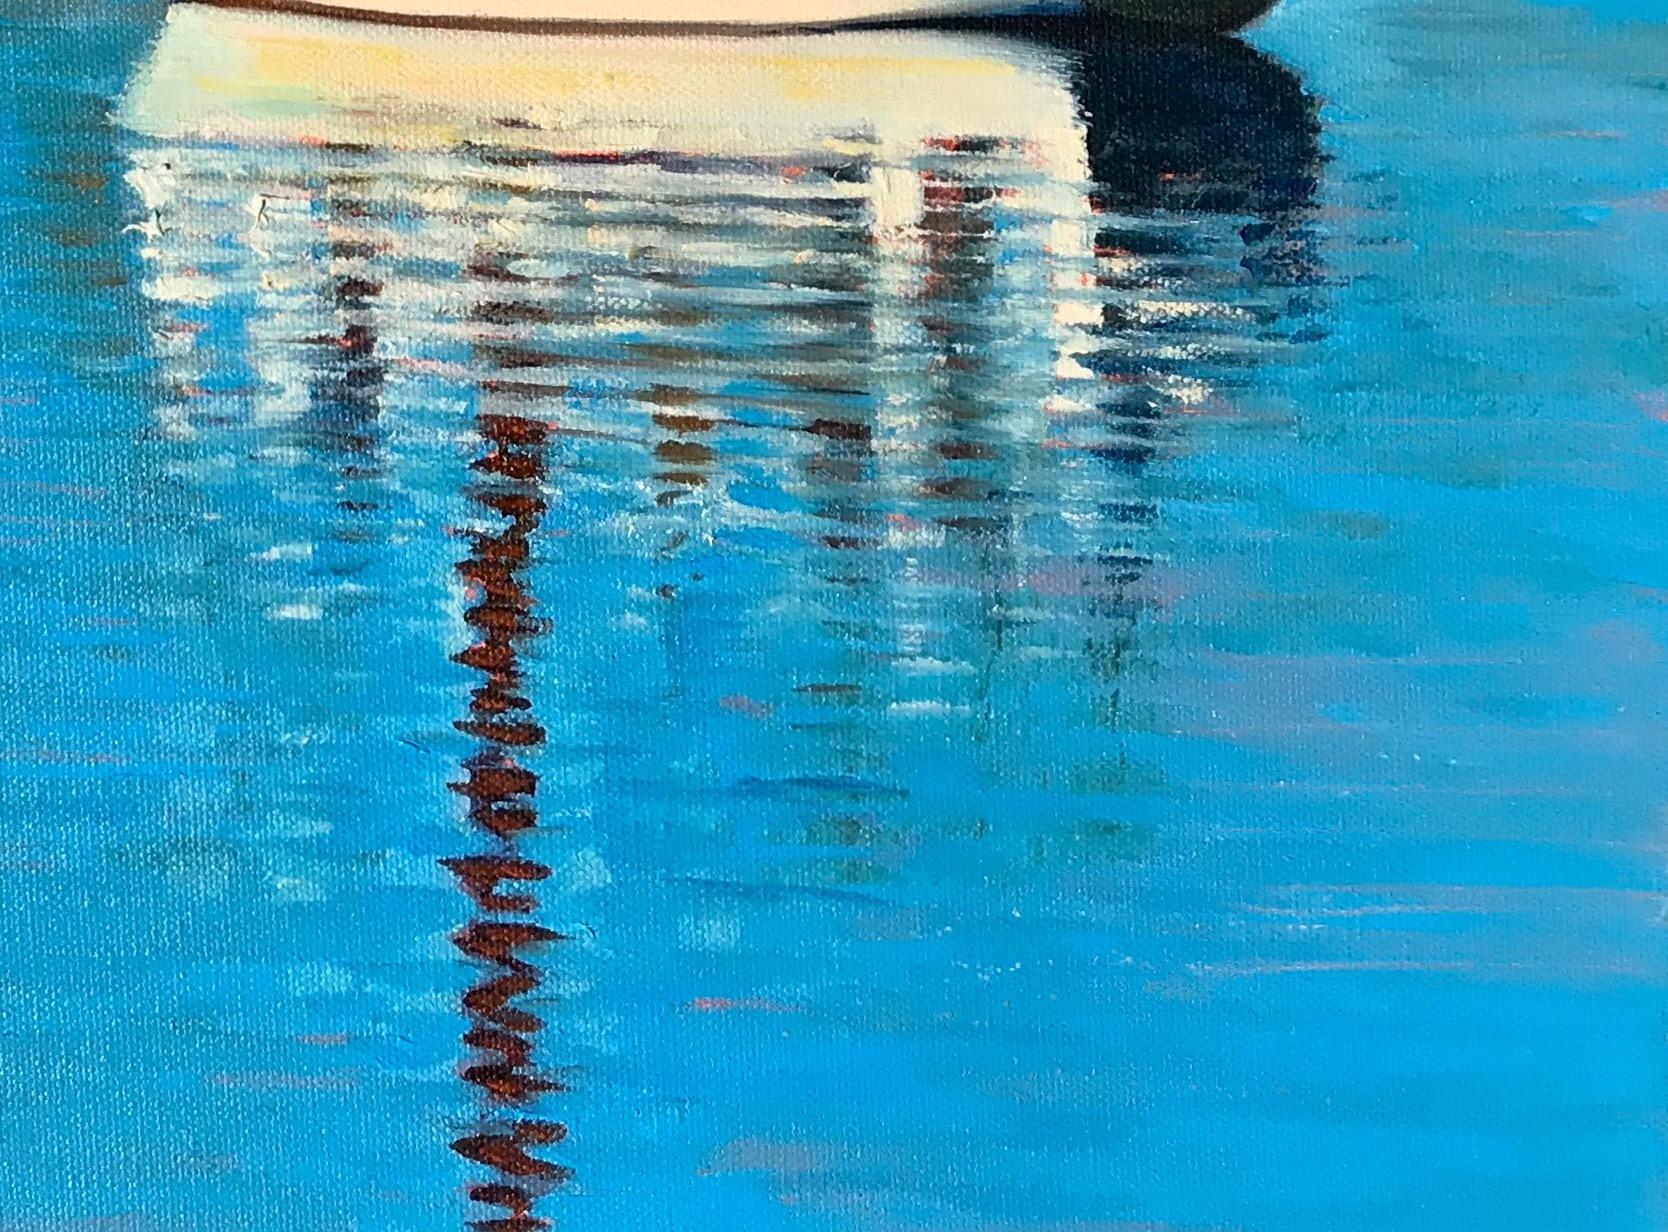  « Morro Bay Reflections » - Voilier dans un port avec des reflets d'eau ondulantes - Painting de Tom Swimm